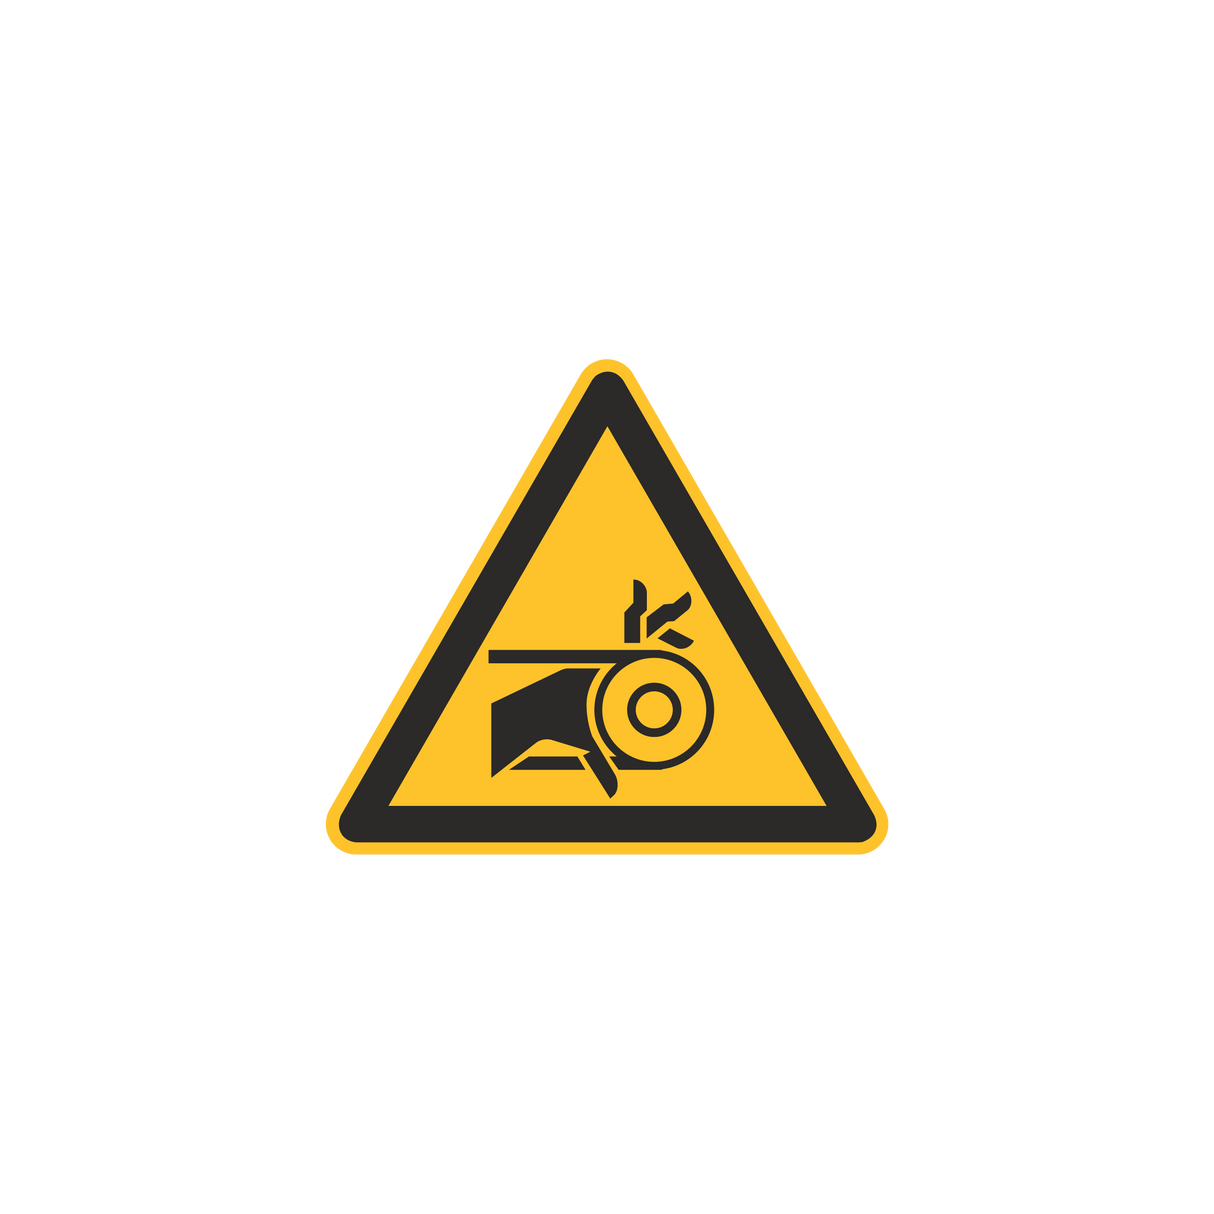 Warnzeichen / Warnung vor Handverletzung durch Riemenantrieb